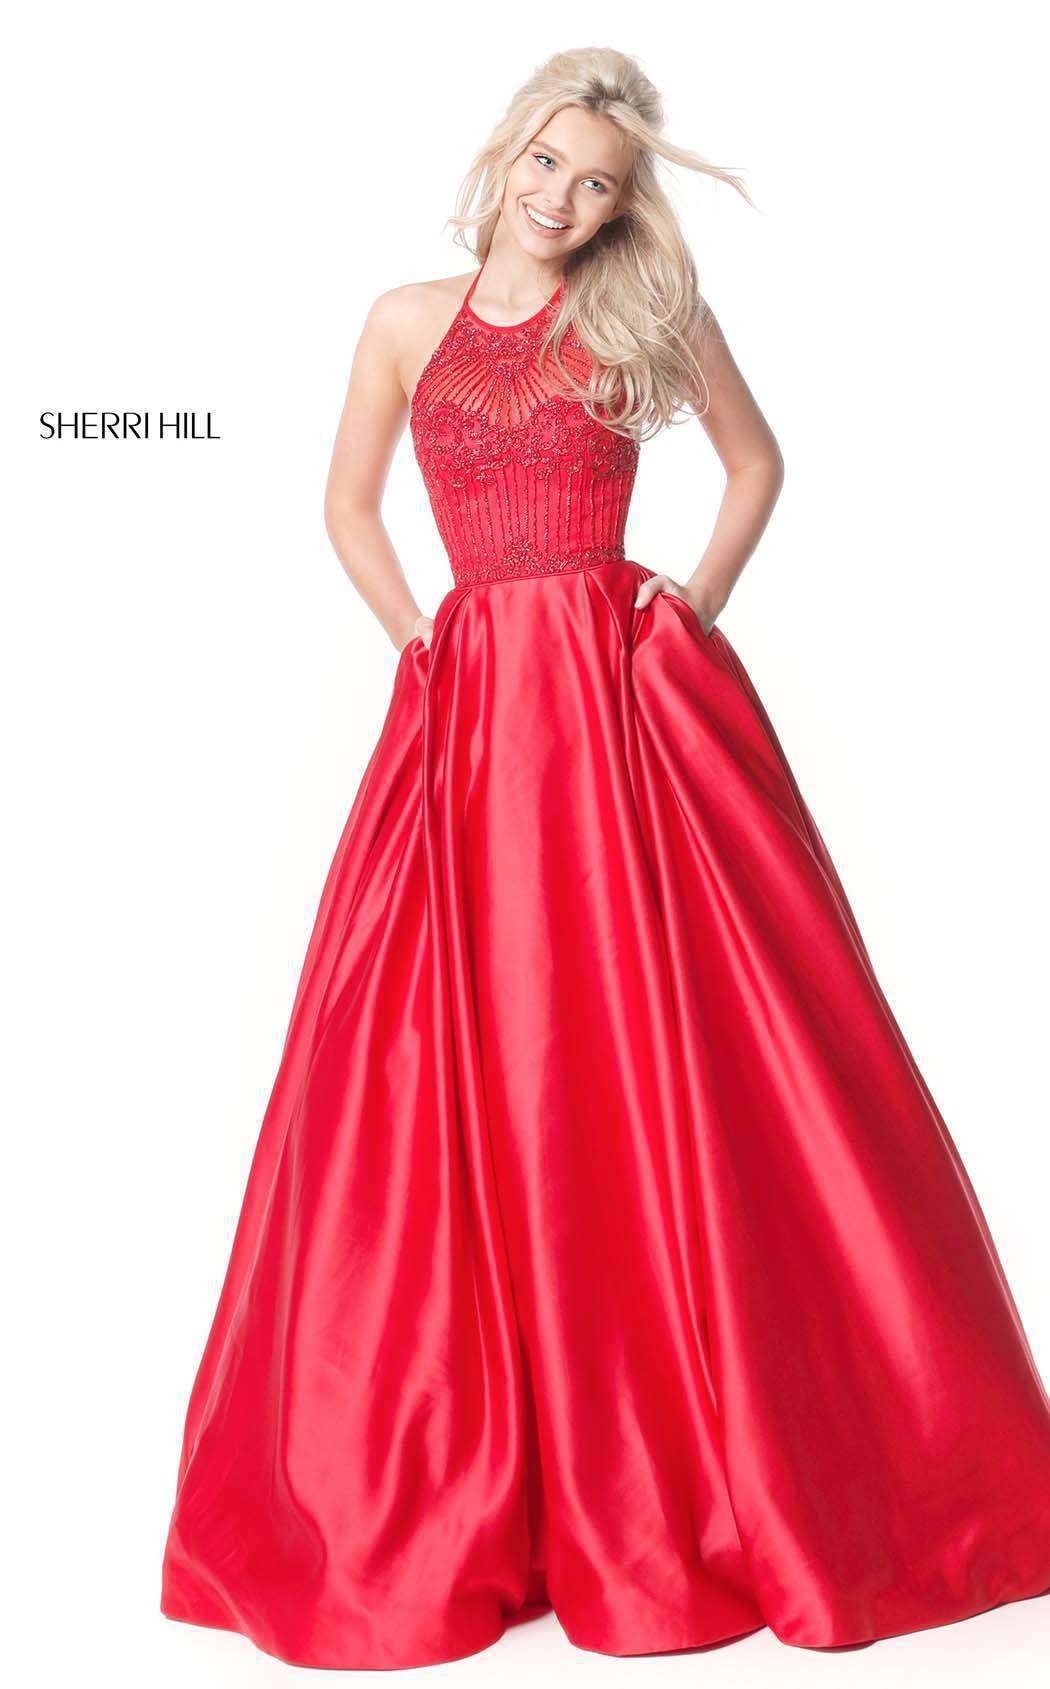 Sherri Hill 51395 Dress | Buy Designer Gowns & Evening Dresses ...